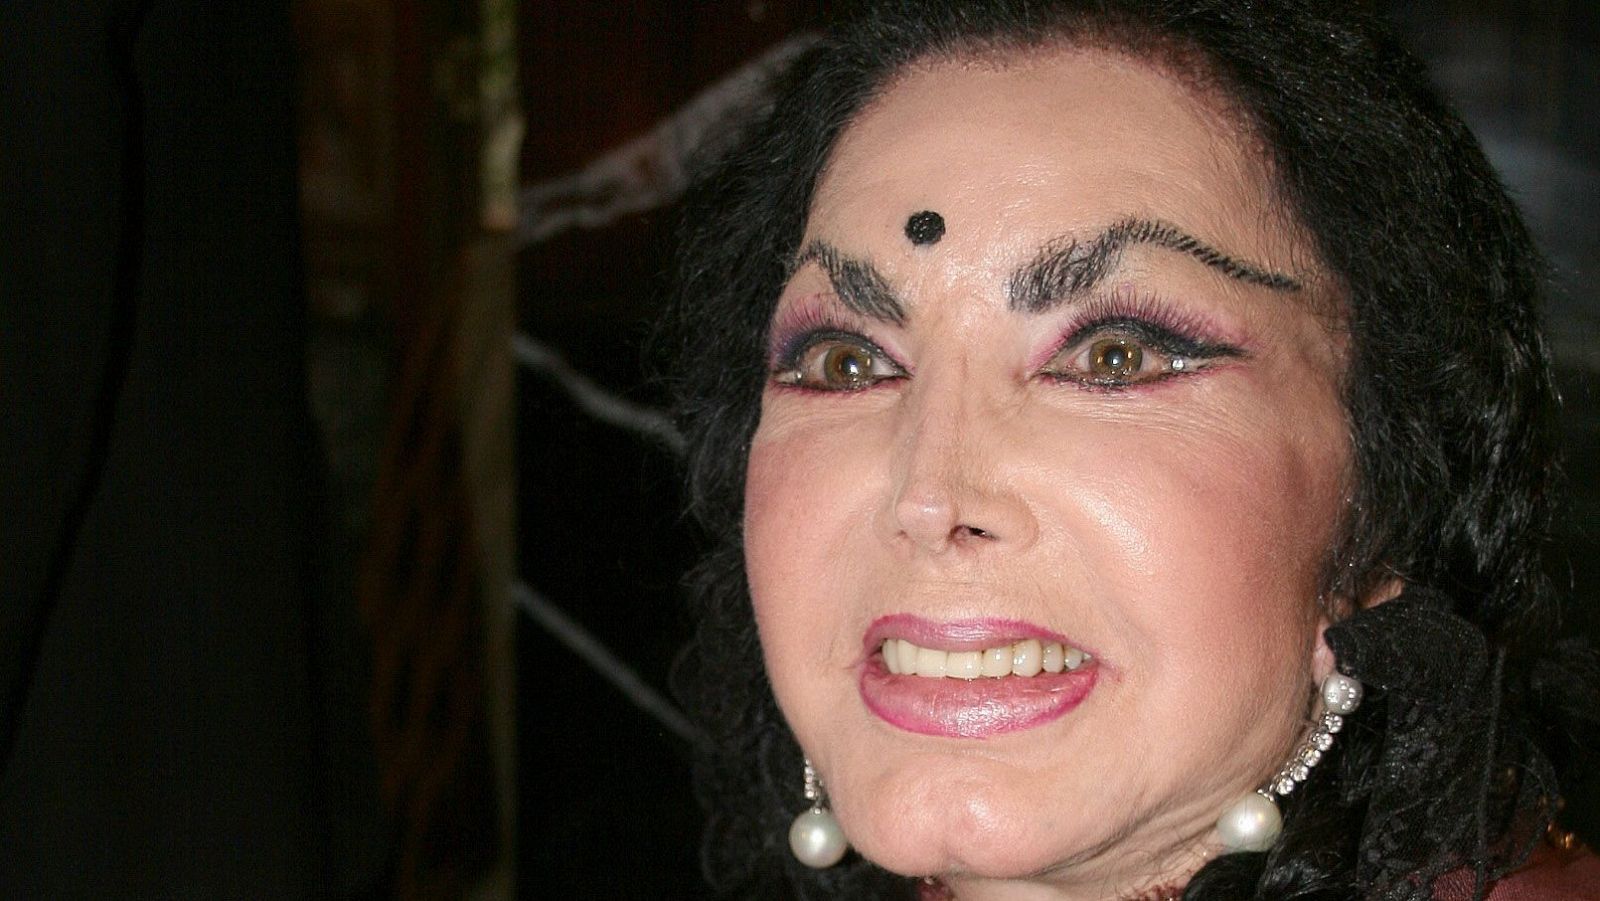 Muere la actriz, cantante y política mexicana Irma Serrano "La Tigresa" a los 89 años